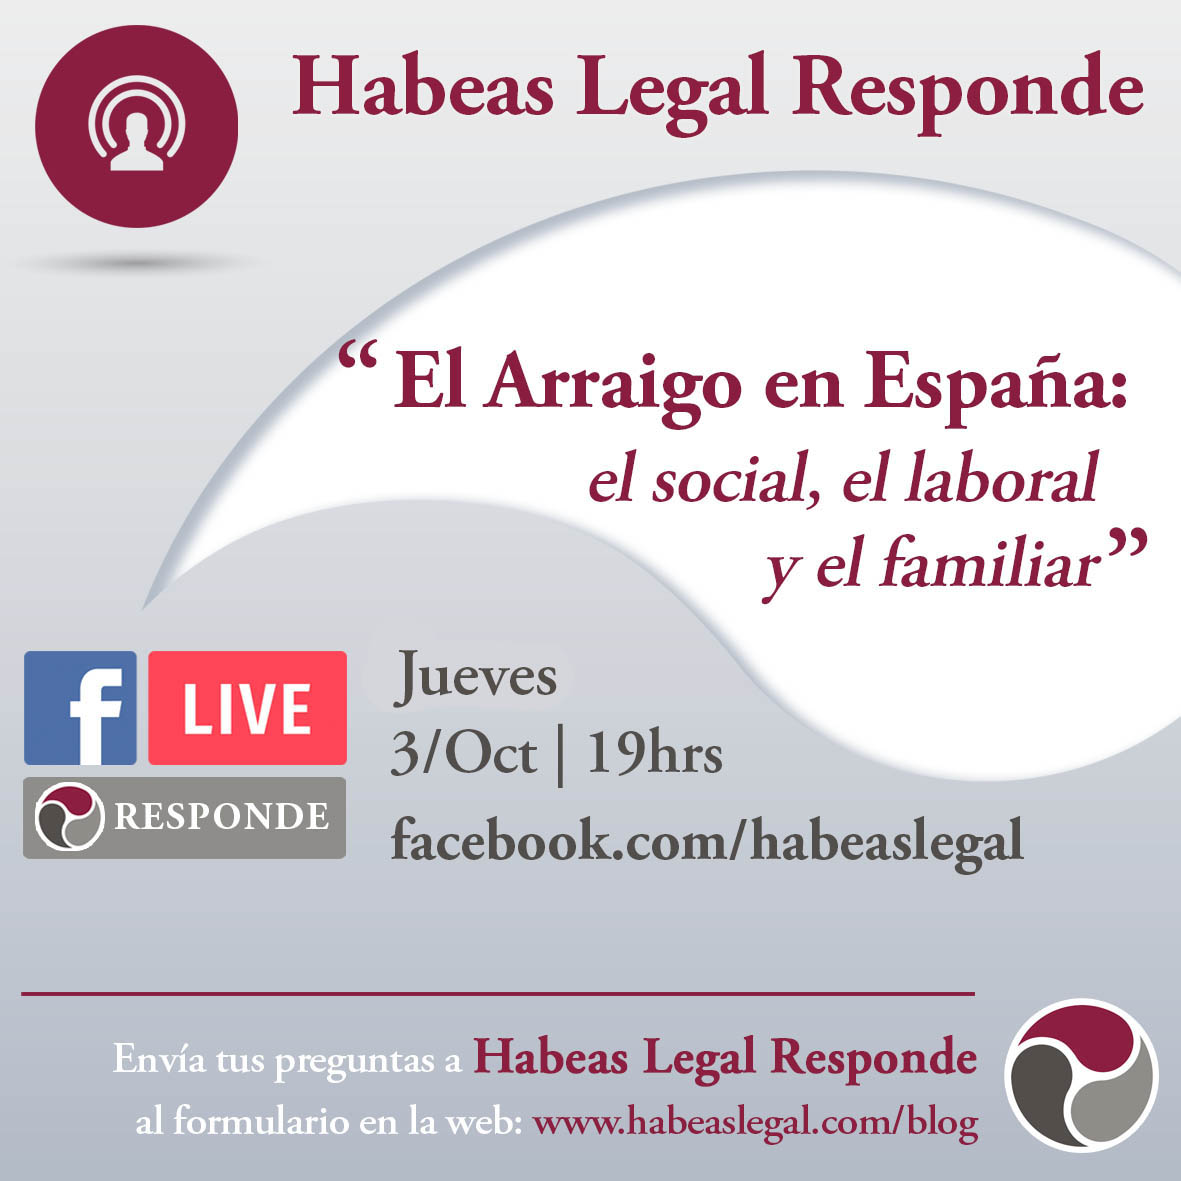 Habeas Legal responde FB Live calendar Arraigo 3Oct